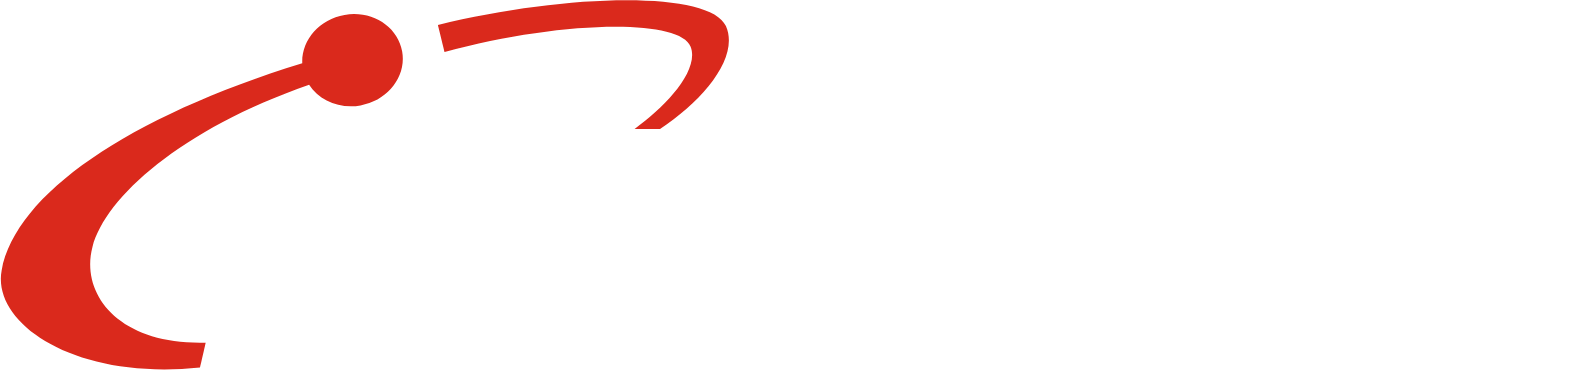 Marel logo large for dark backgrounds (transparent PNG)